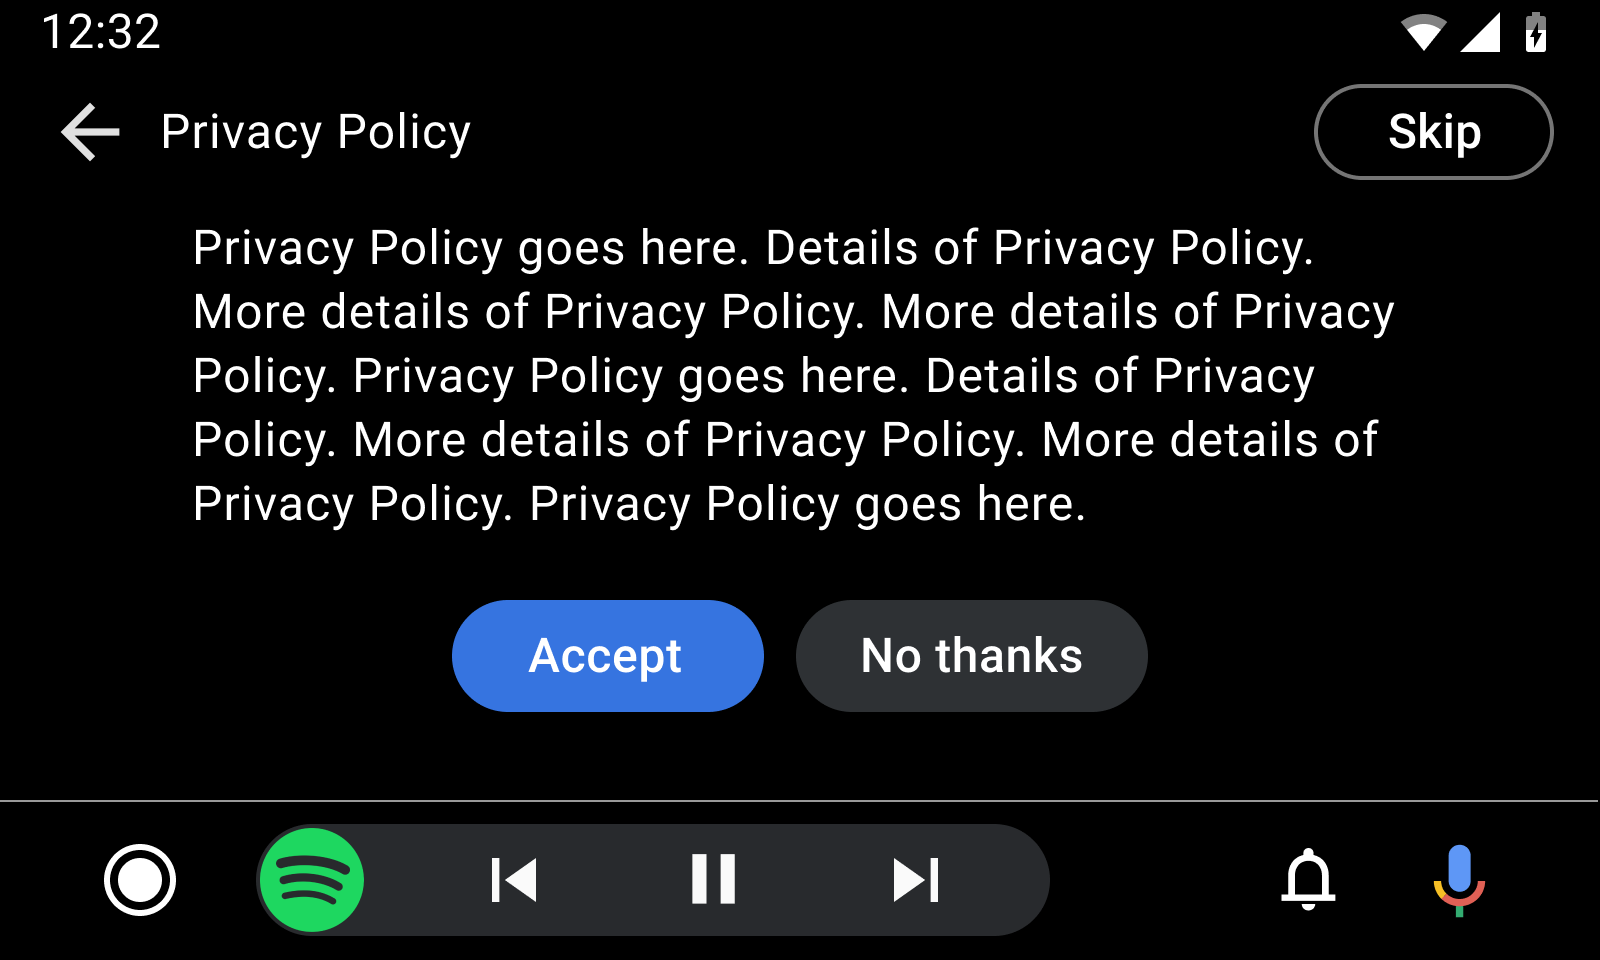 Makieta szablonu długiej wiadomości z przykładową polityką prywatności